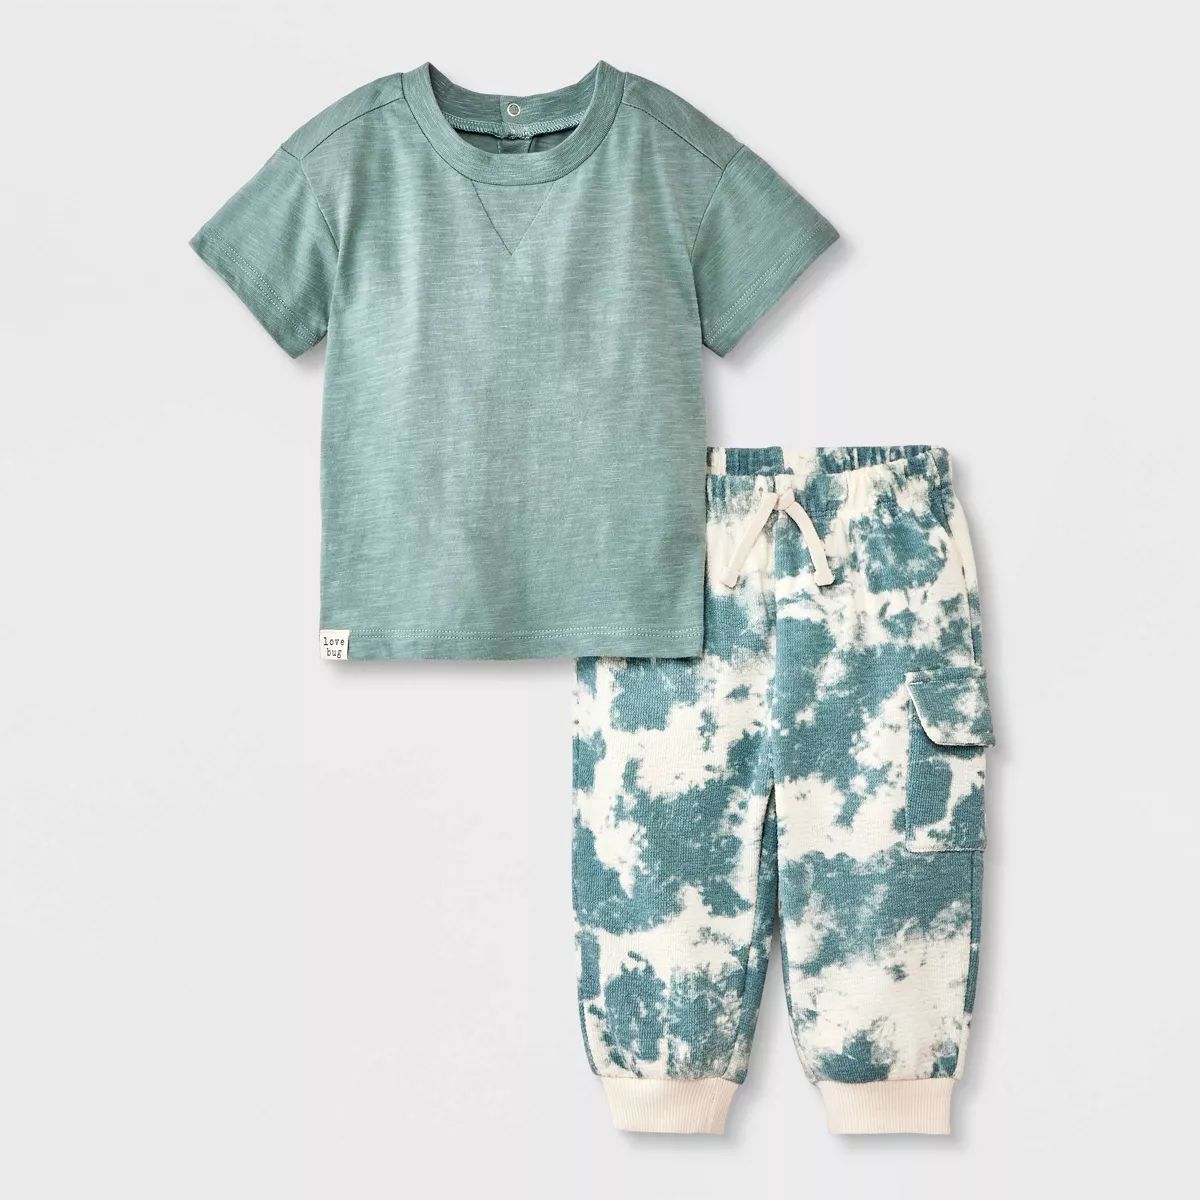 Grayson Mini Baby Boys' Tie Dye Top & Bottom Set - Green | Target